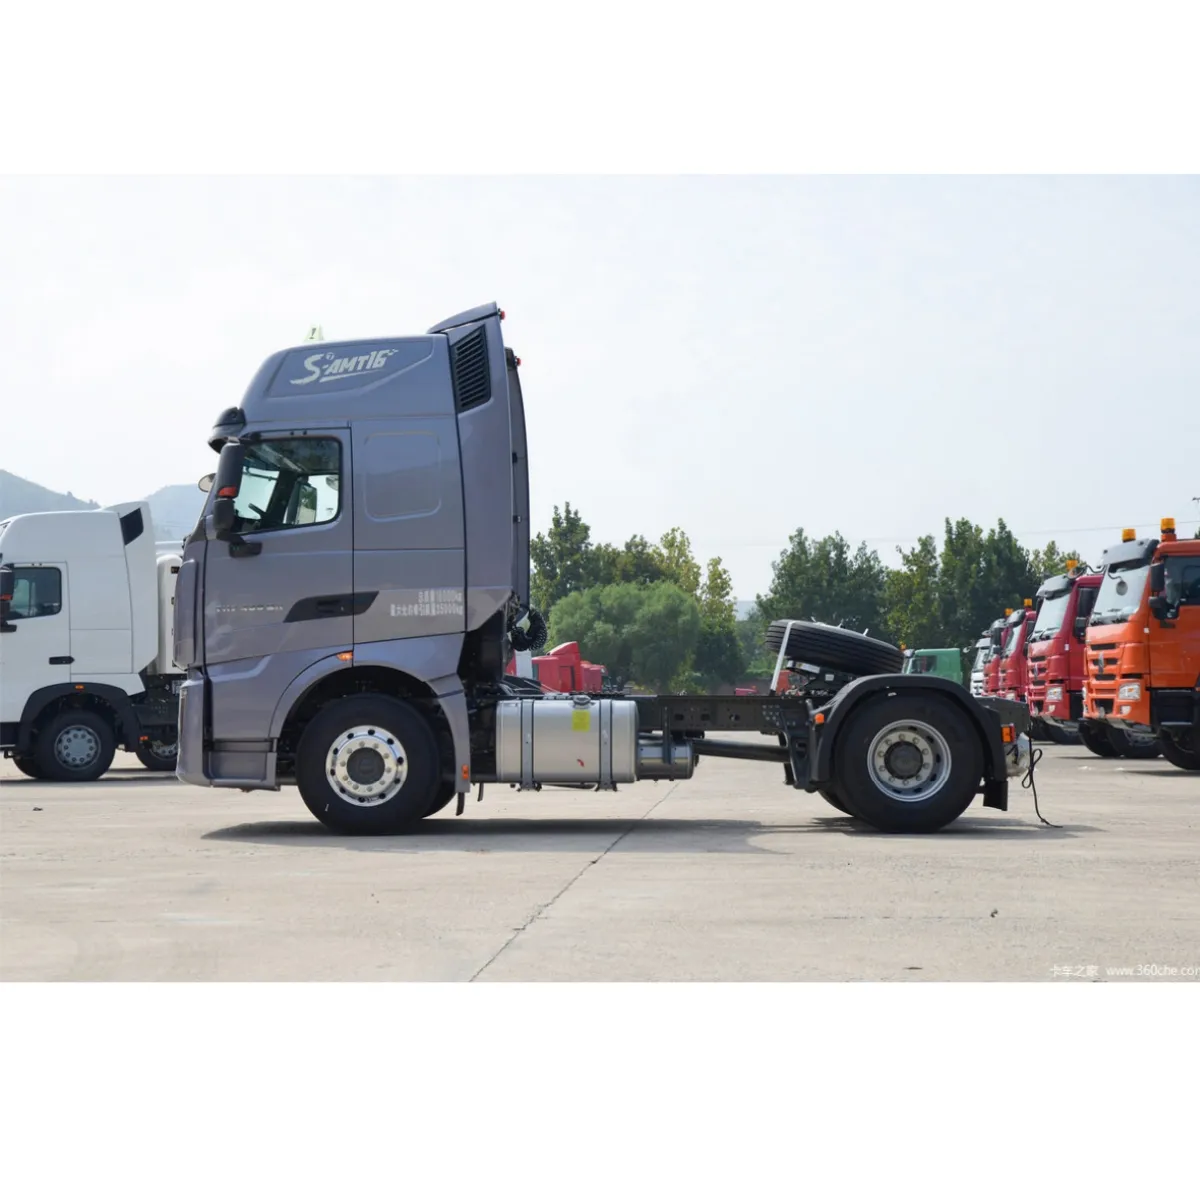 Vendita calda buon prezzo usato Sinotruk testa rimorchio 430hp 4x2 6 tipi di ruote pesanti trattore camion Made In China